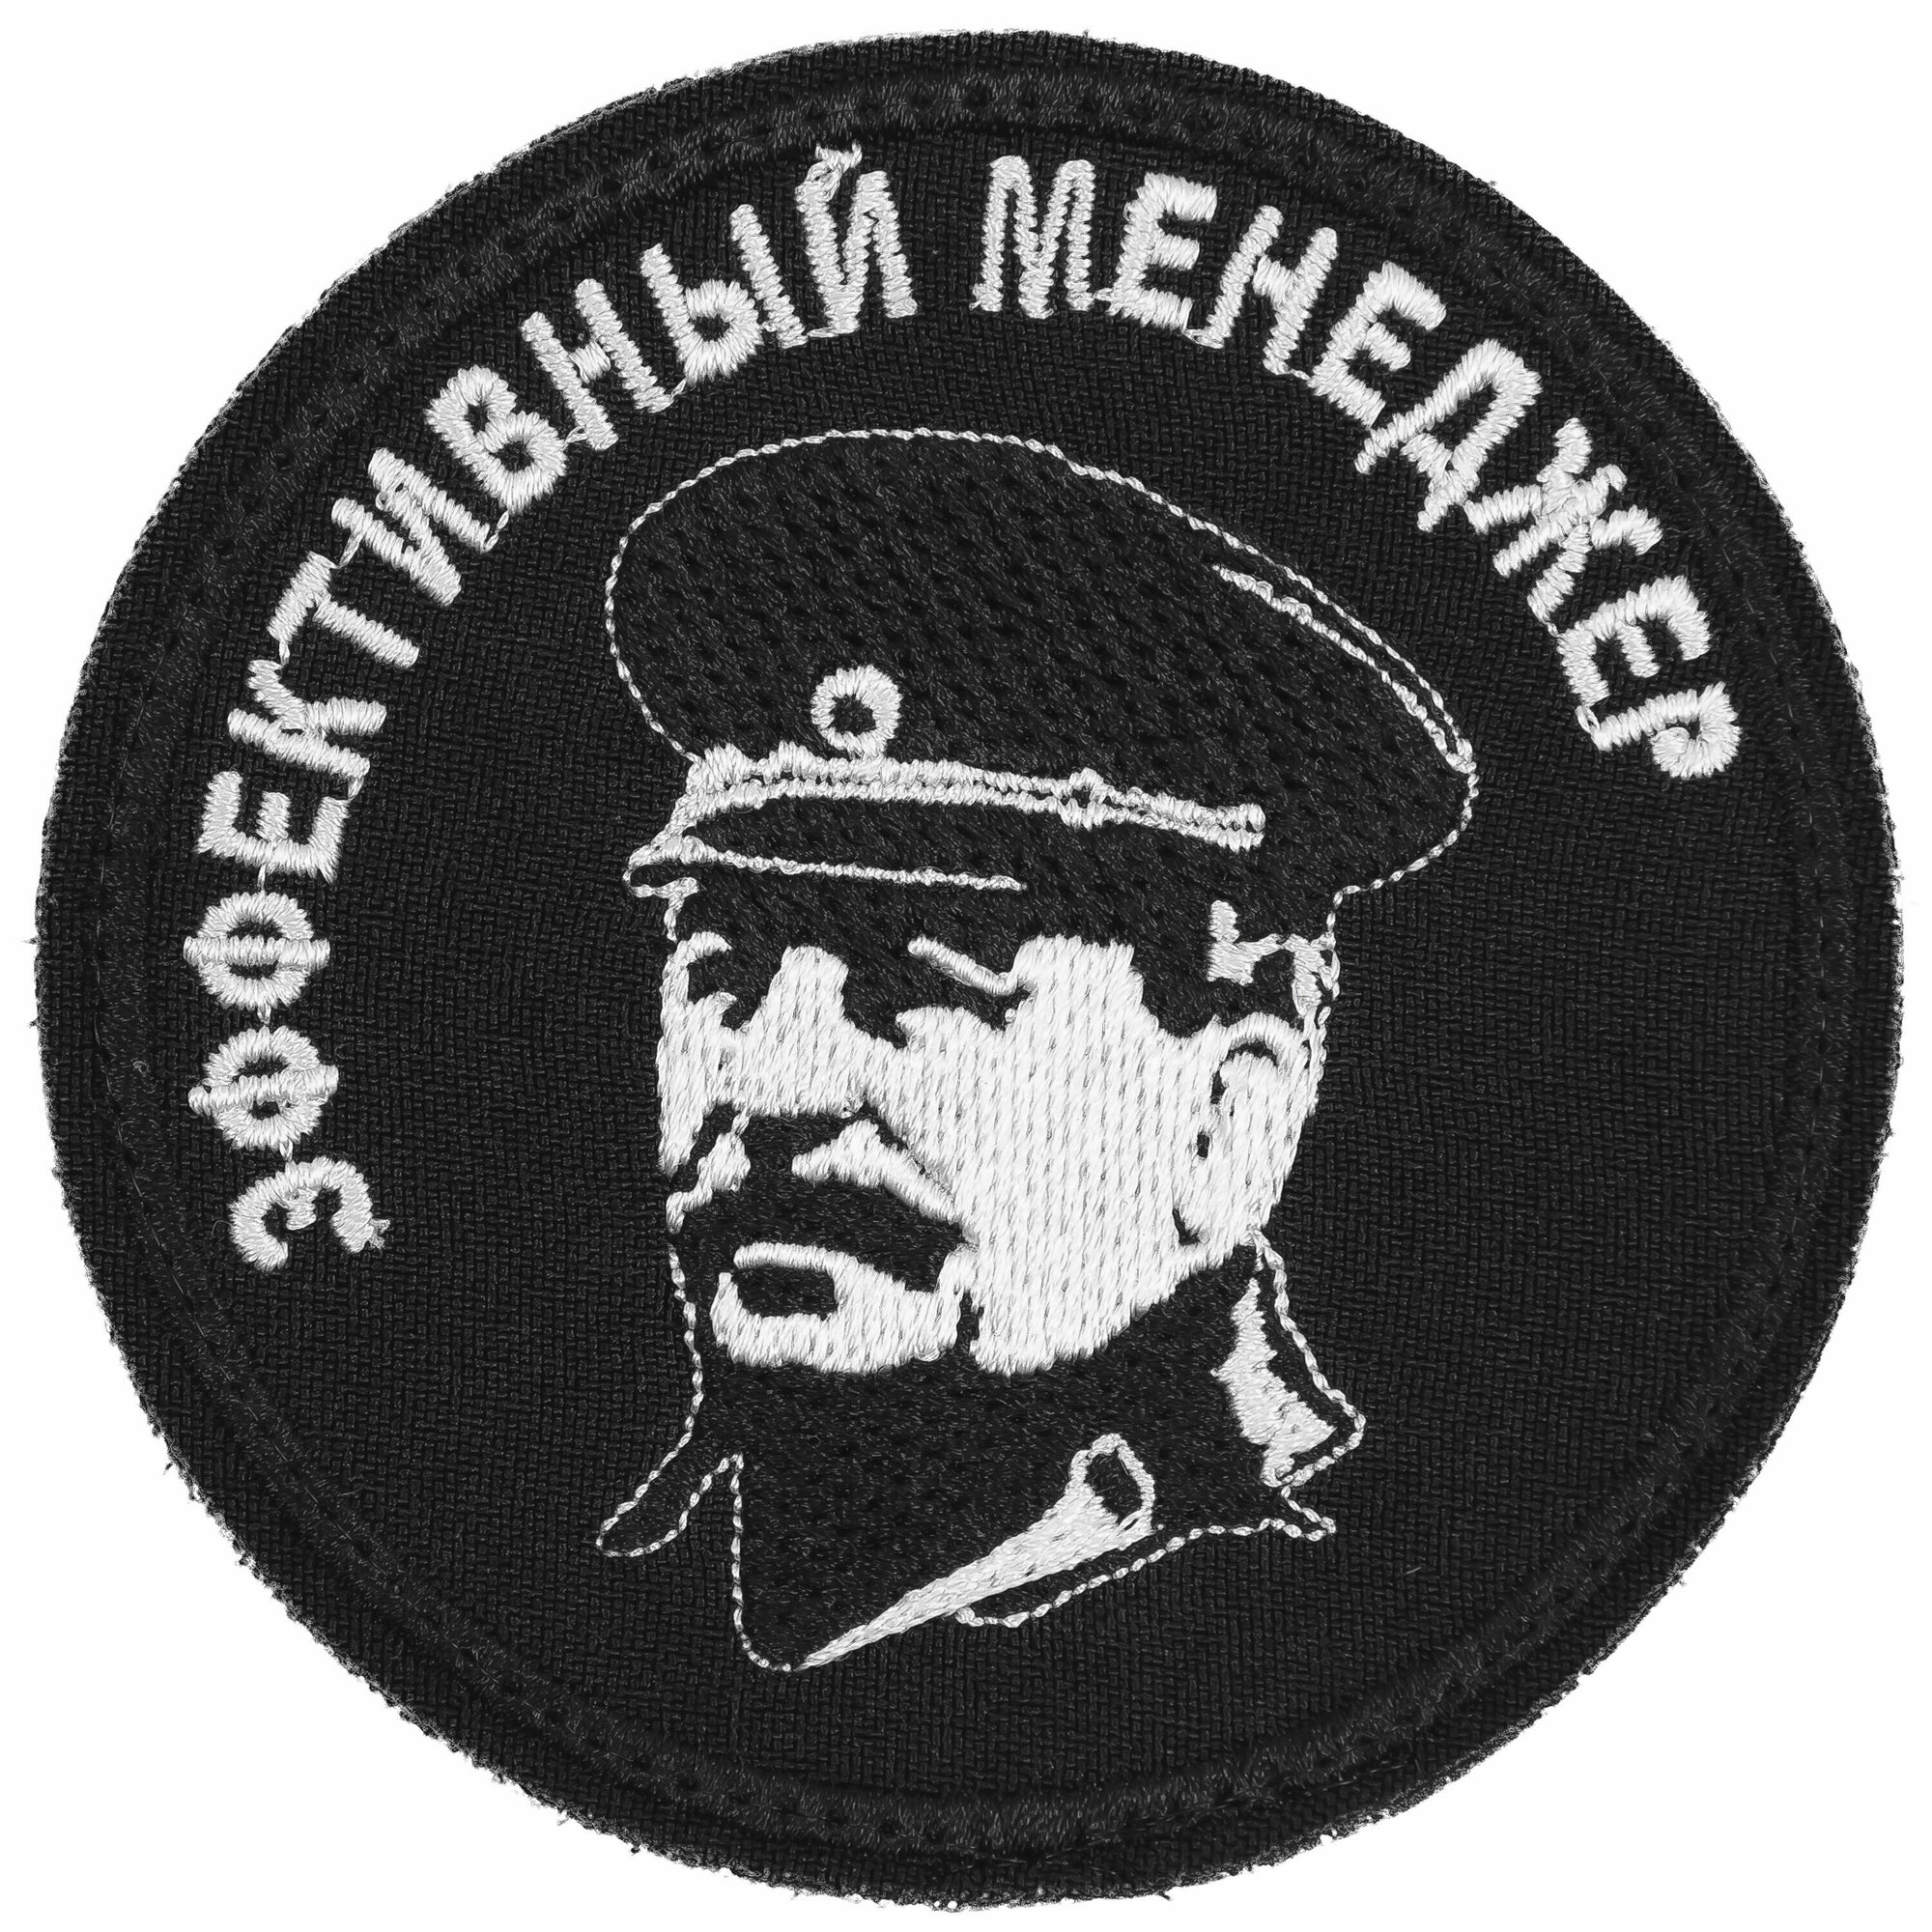 Нашивка шеврон патч (patch) на липучке Эффективный менеджер (Сталин) размер 83*83 см